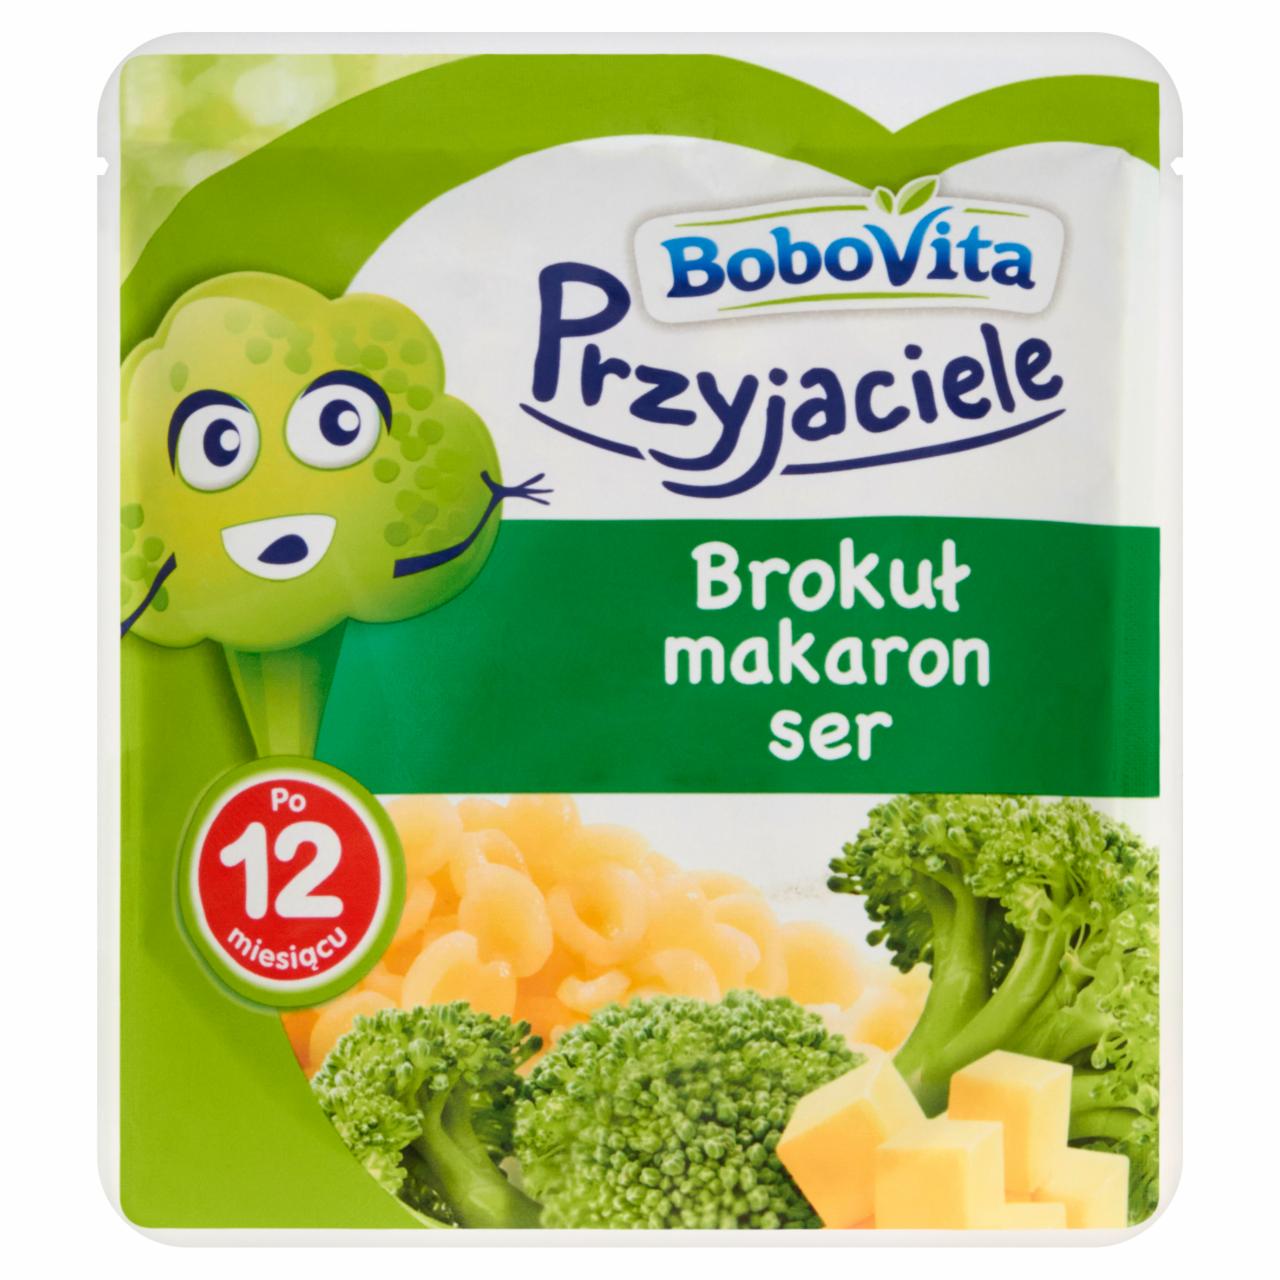 Zdjęcia - BoboVita Przyjaciele Brokuł makaron ser po 12 miesiącu 190 g